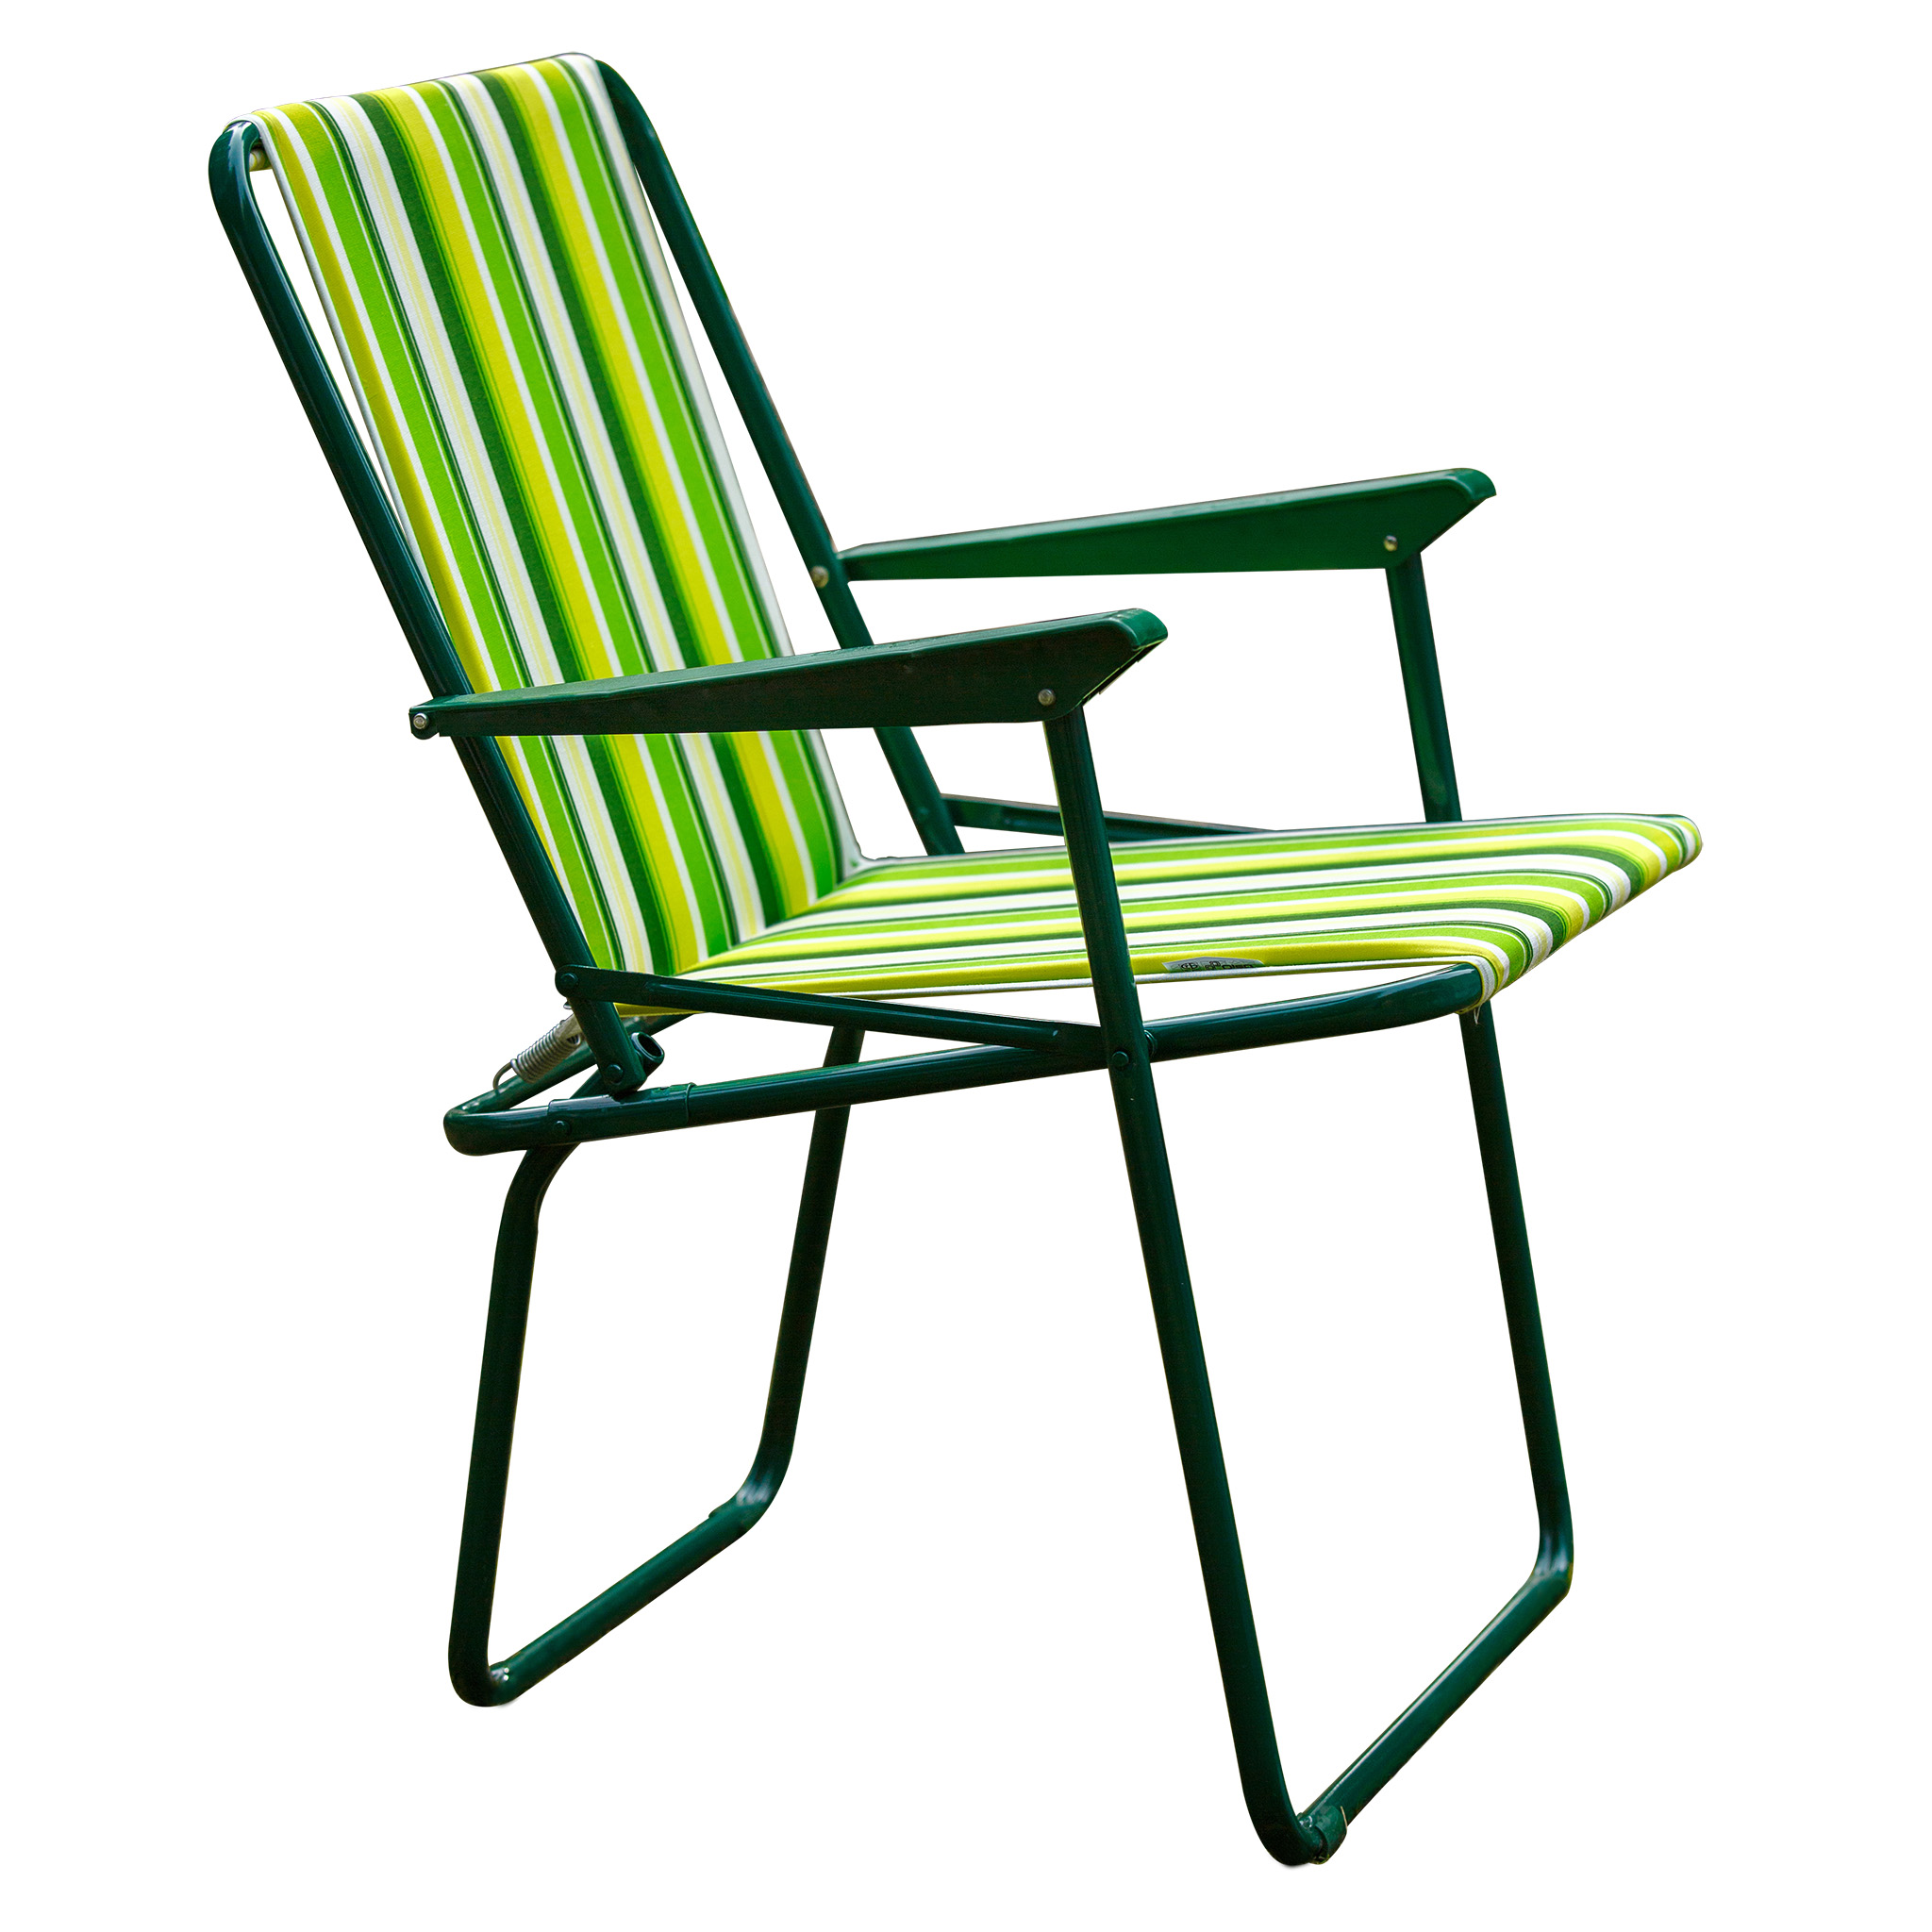 Кресло складное фольварк жесткое арт.с564/7 бордовый желто-зеленый,